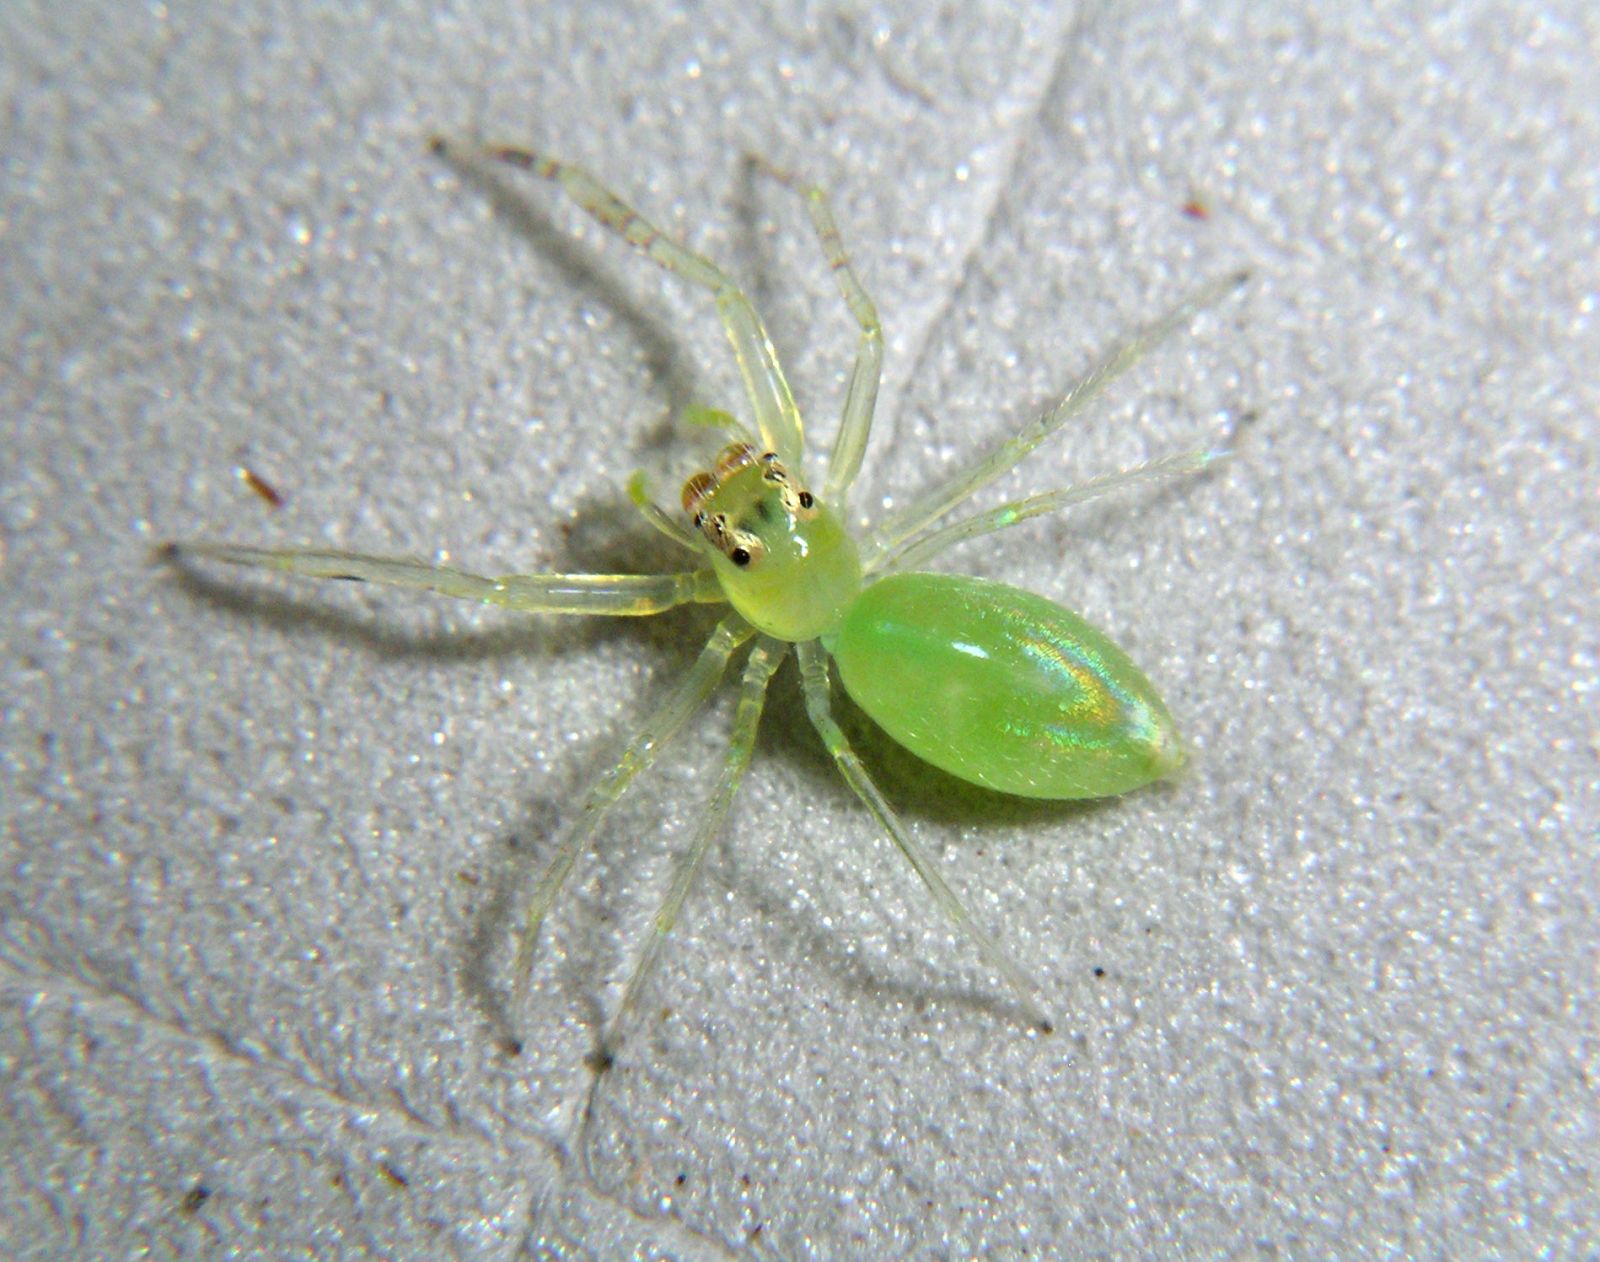 Una de las arañas saltarinas encontradas, llamada Orthrus sp.